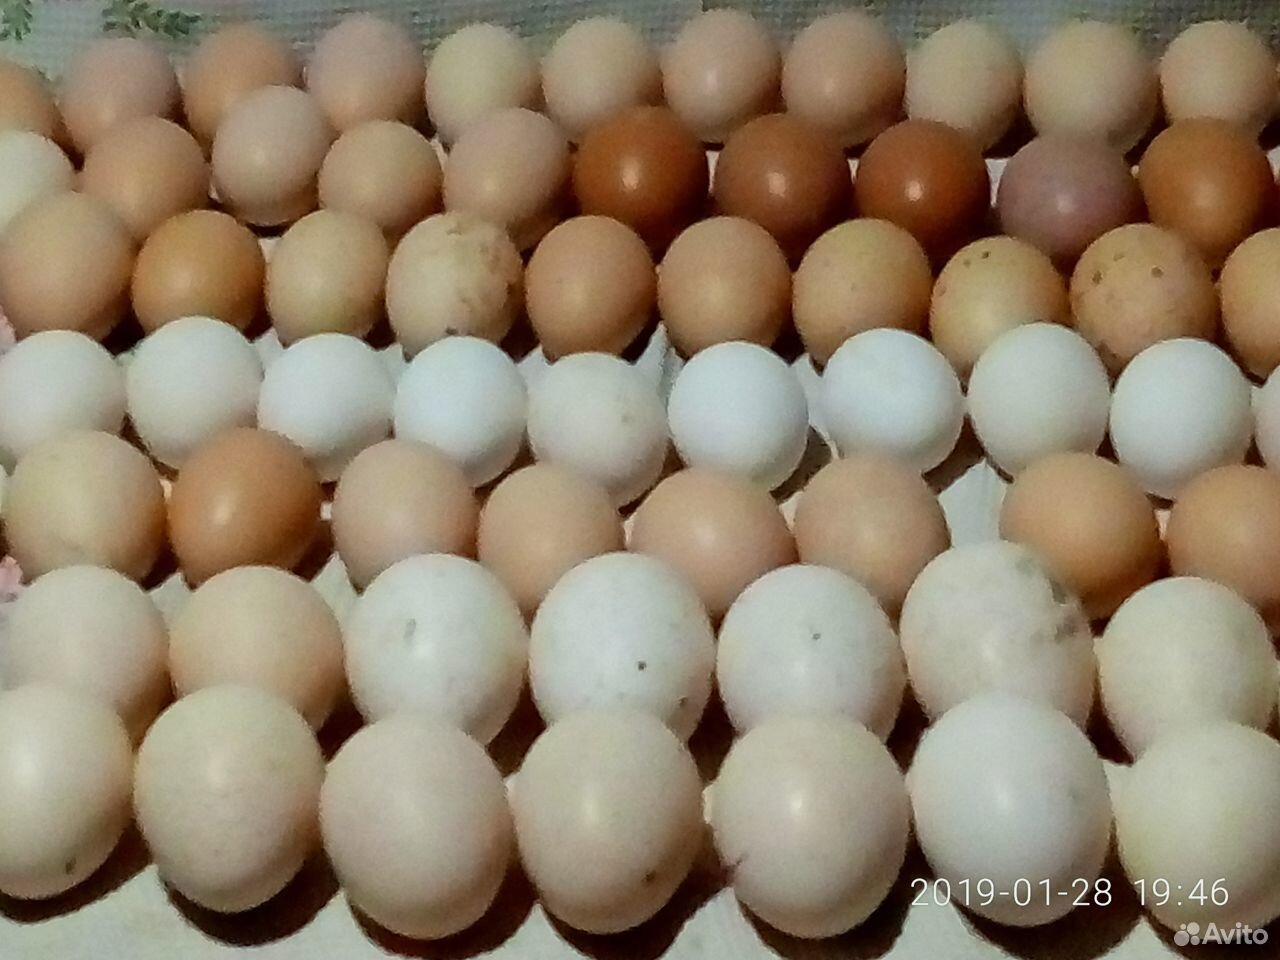 Купить яйцо билефельдеров